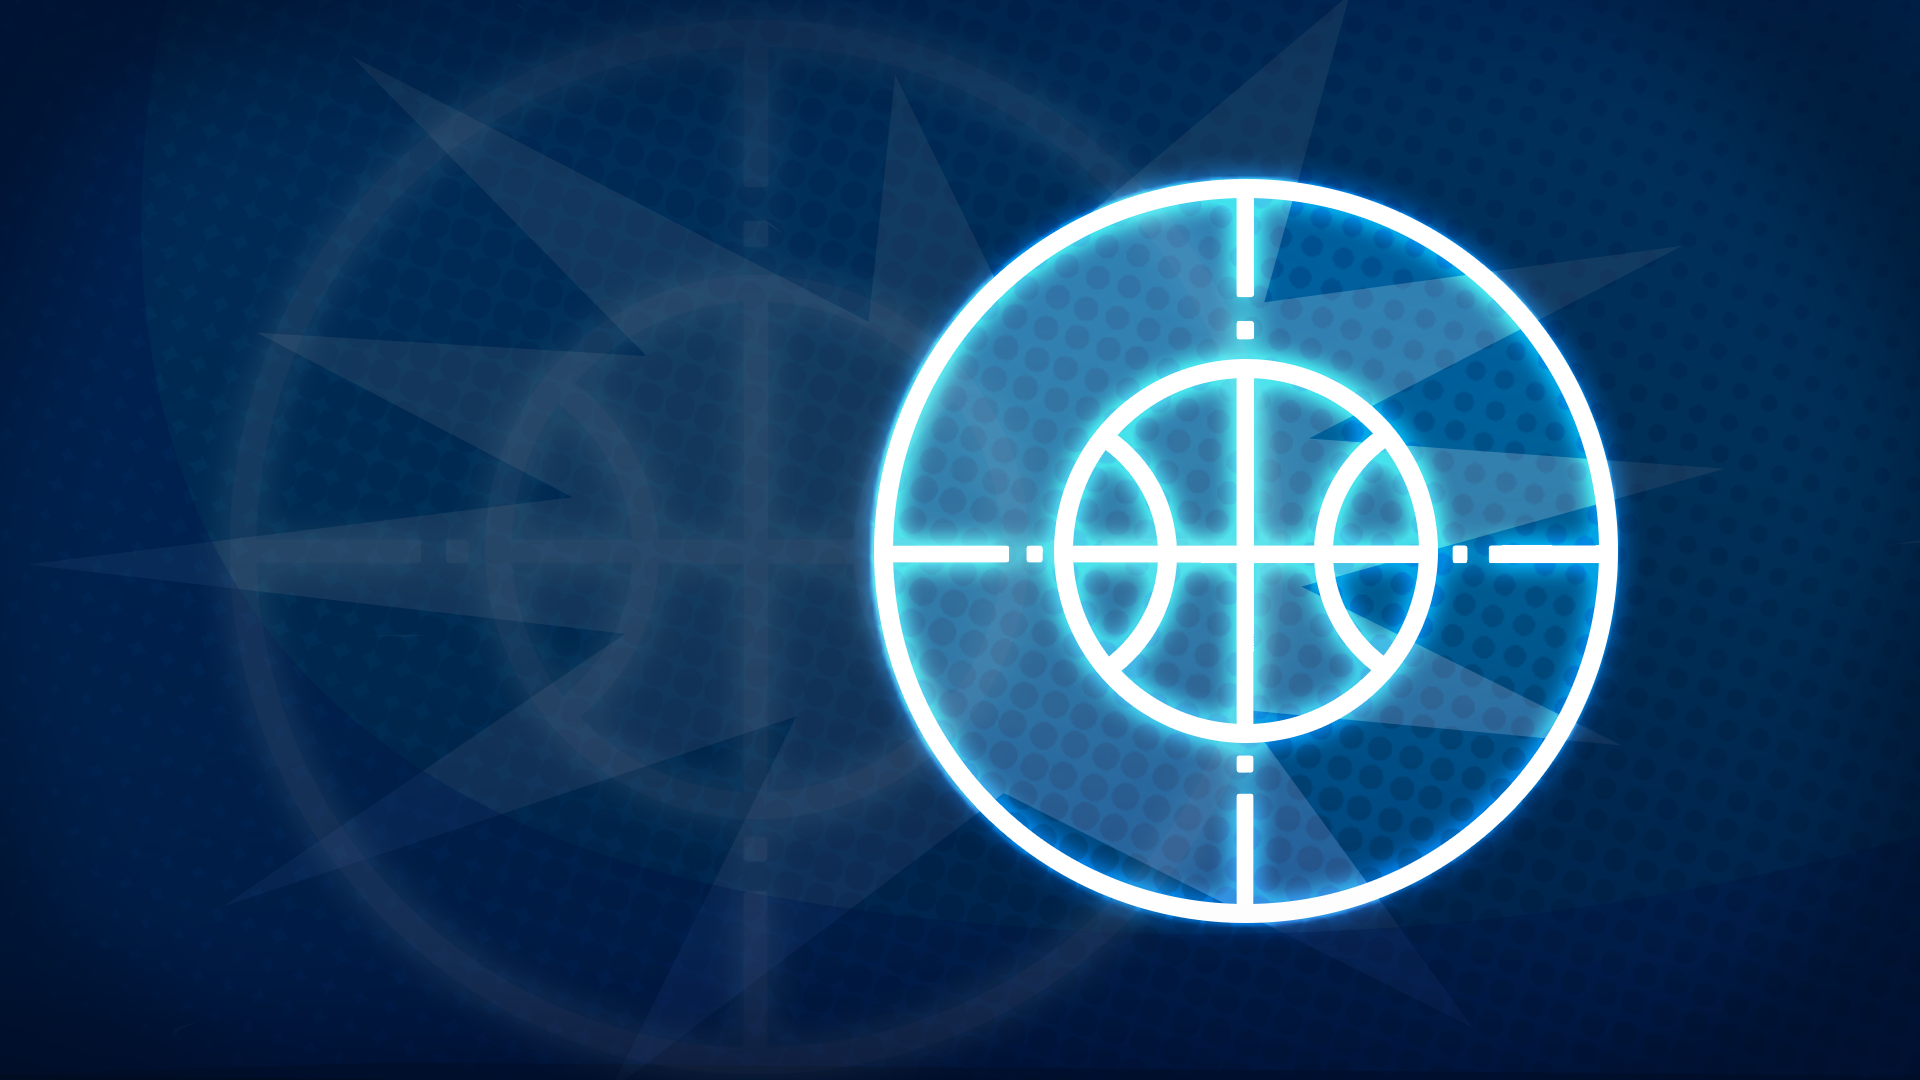 Icon for Sniper